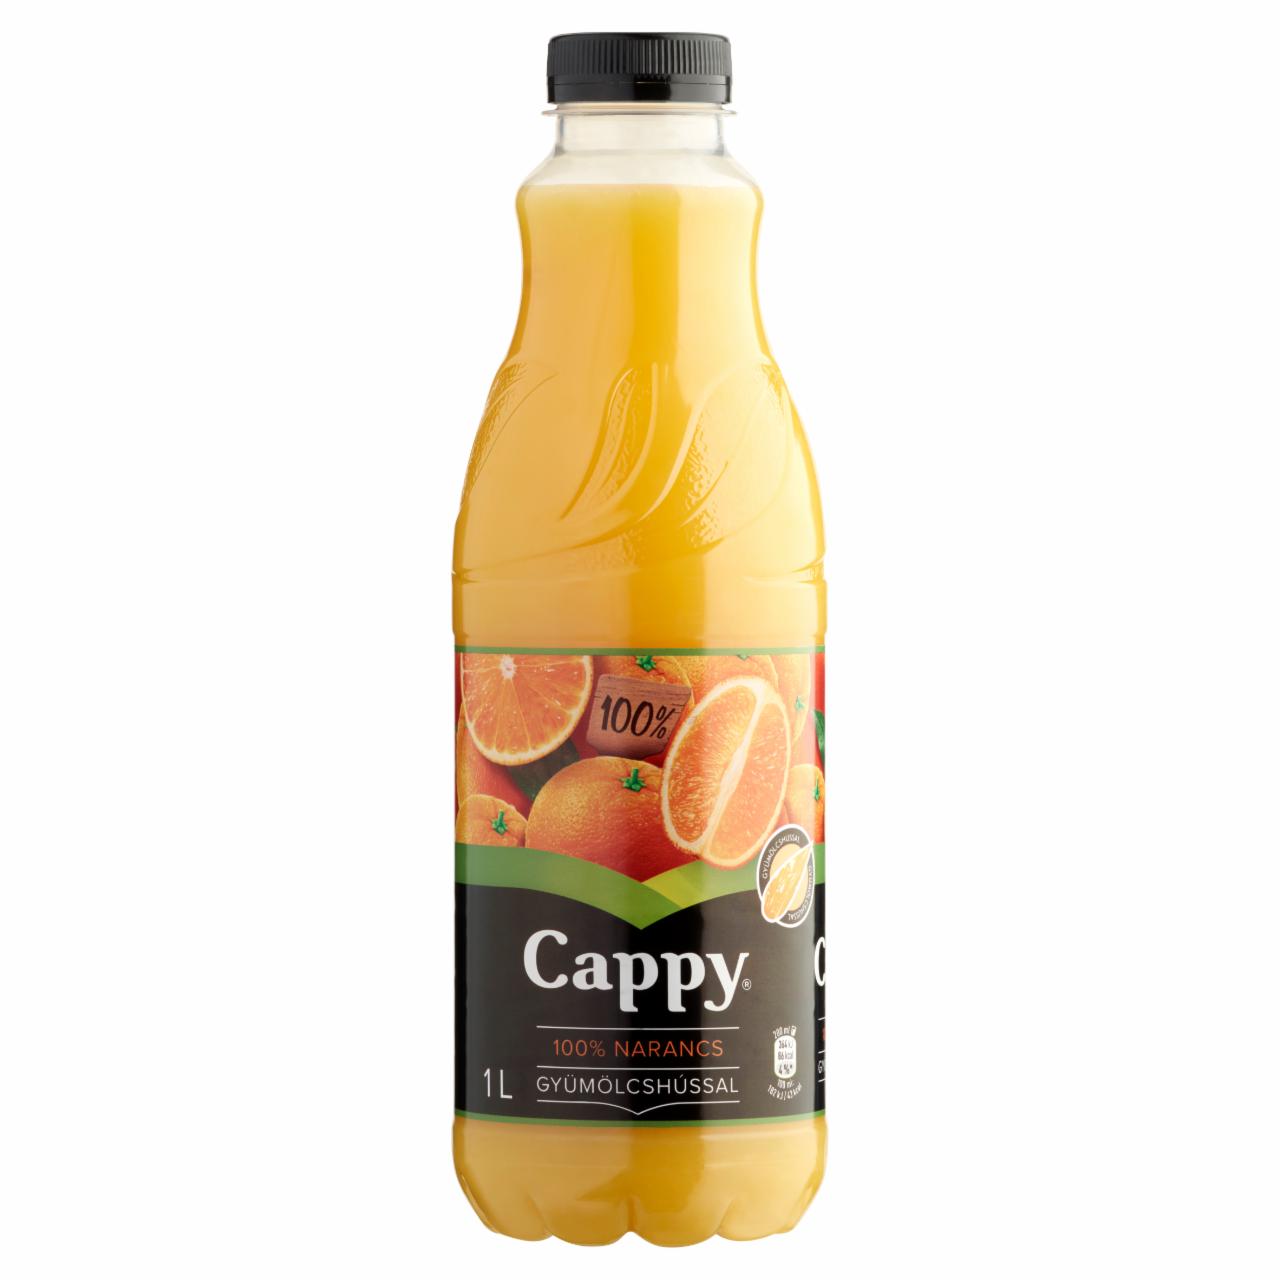 Képek - 100% narancslé gyümölcshússal Cappy